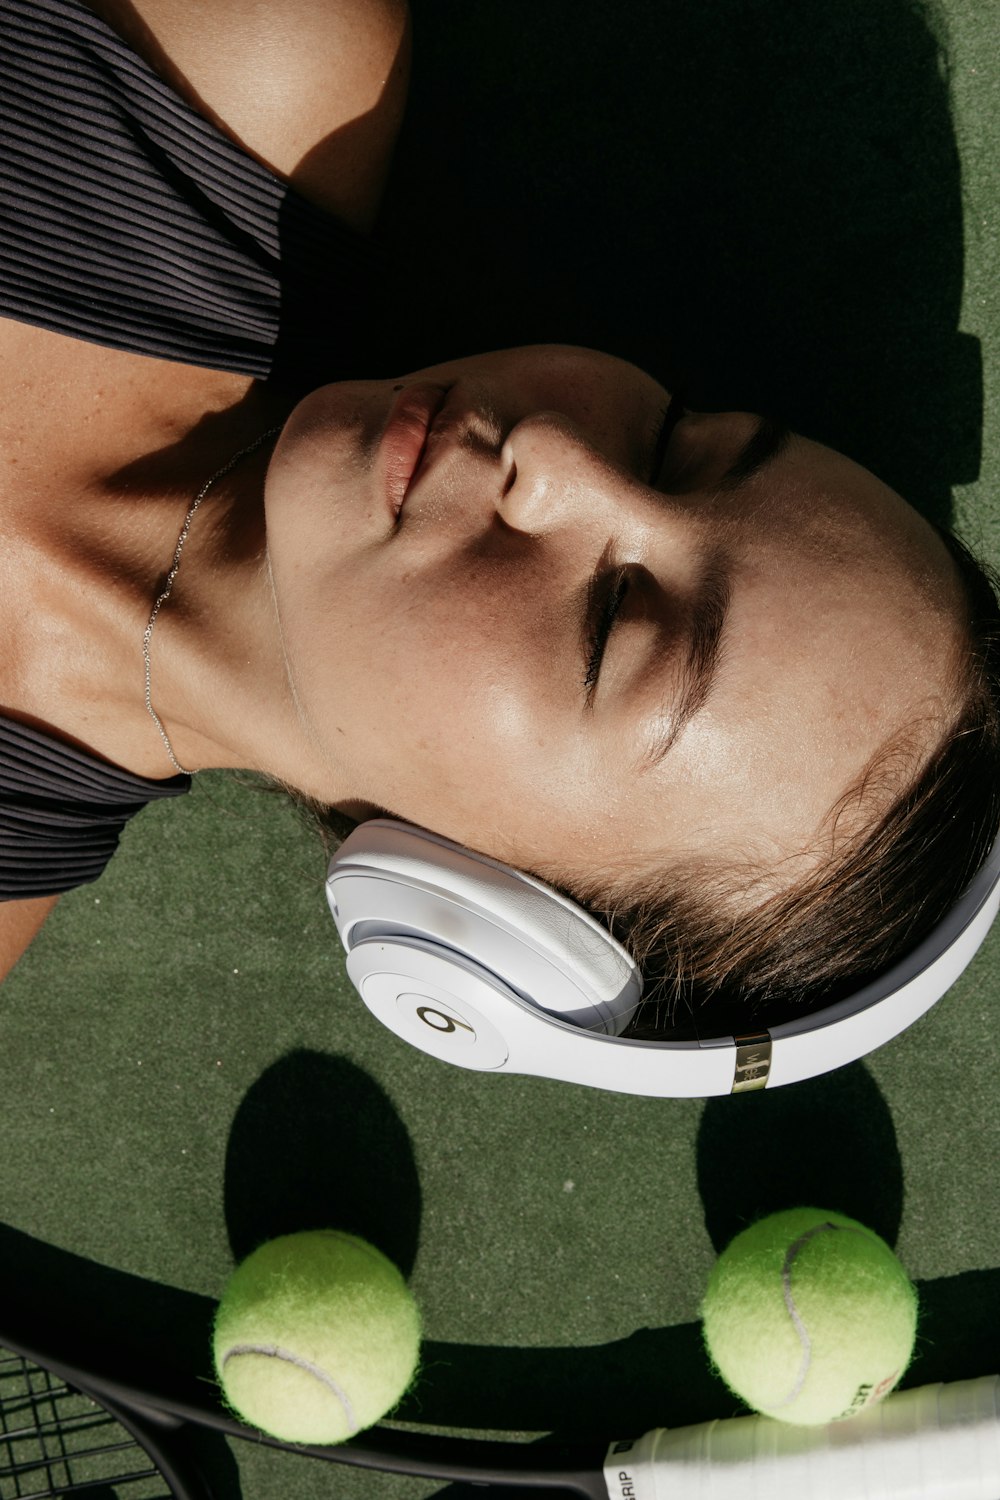 femme utilisant des écouteurs Beats blancs à côté de deux balles de tennis vertes